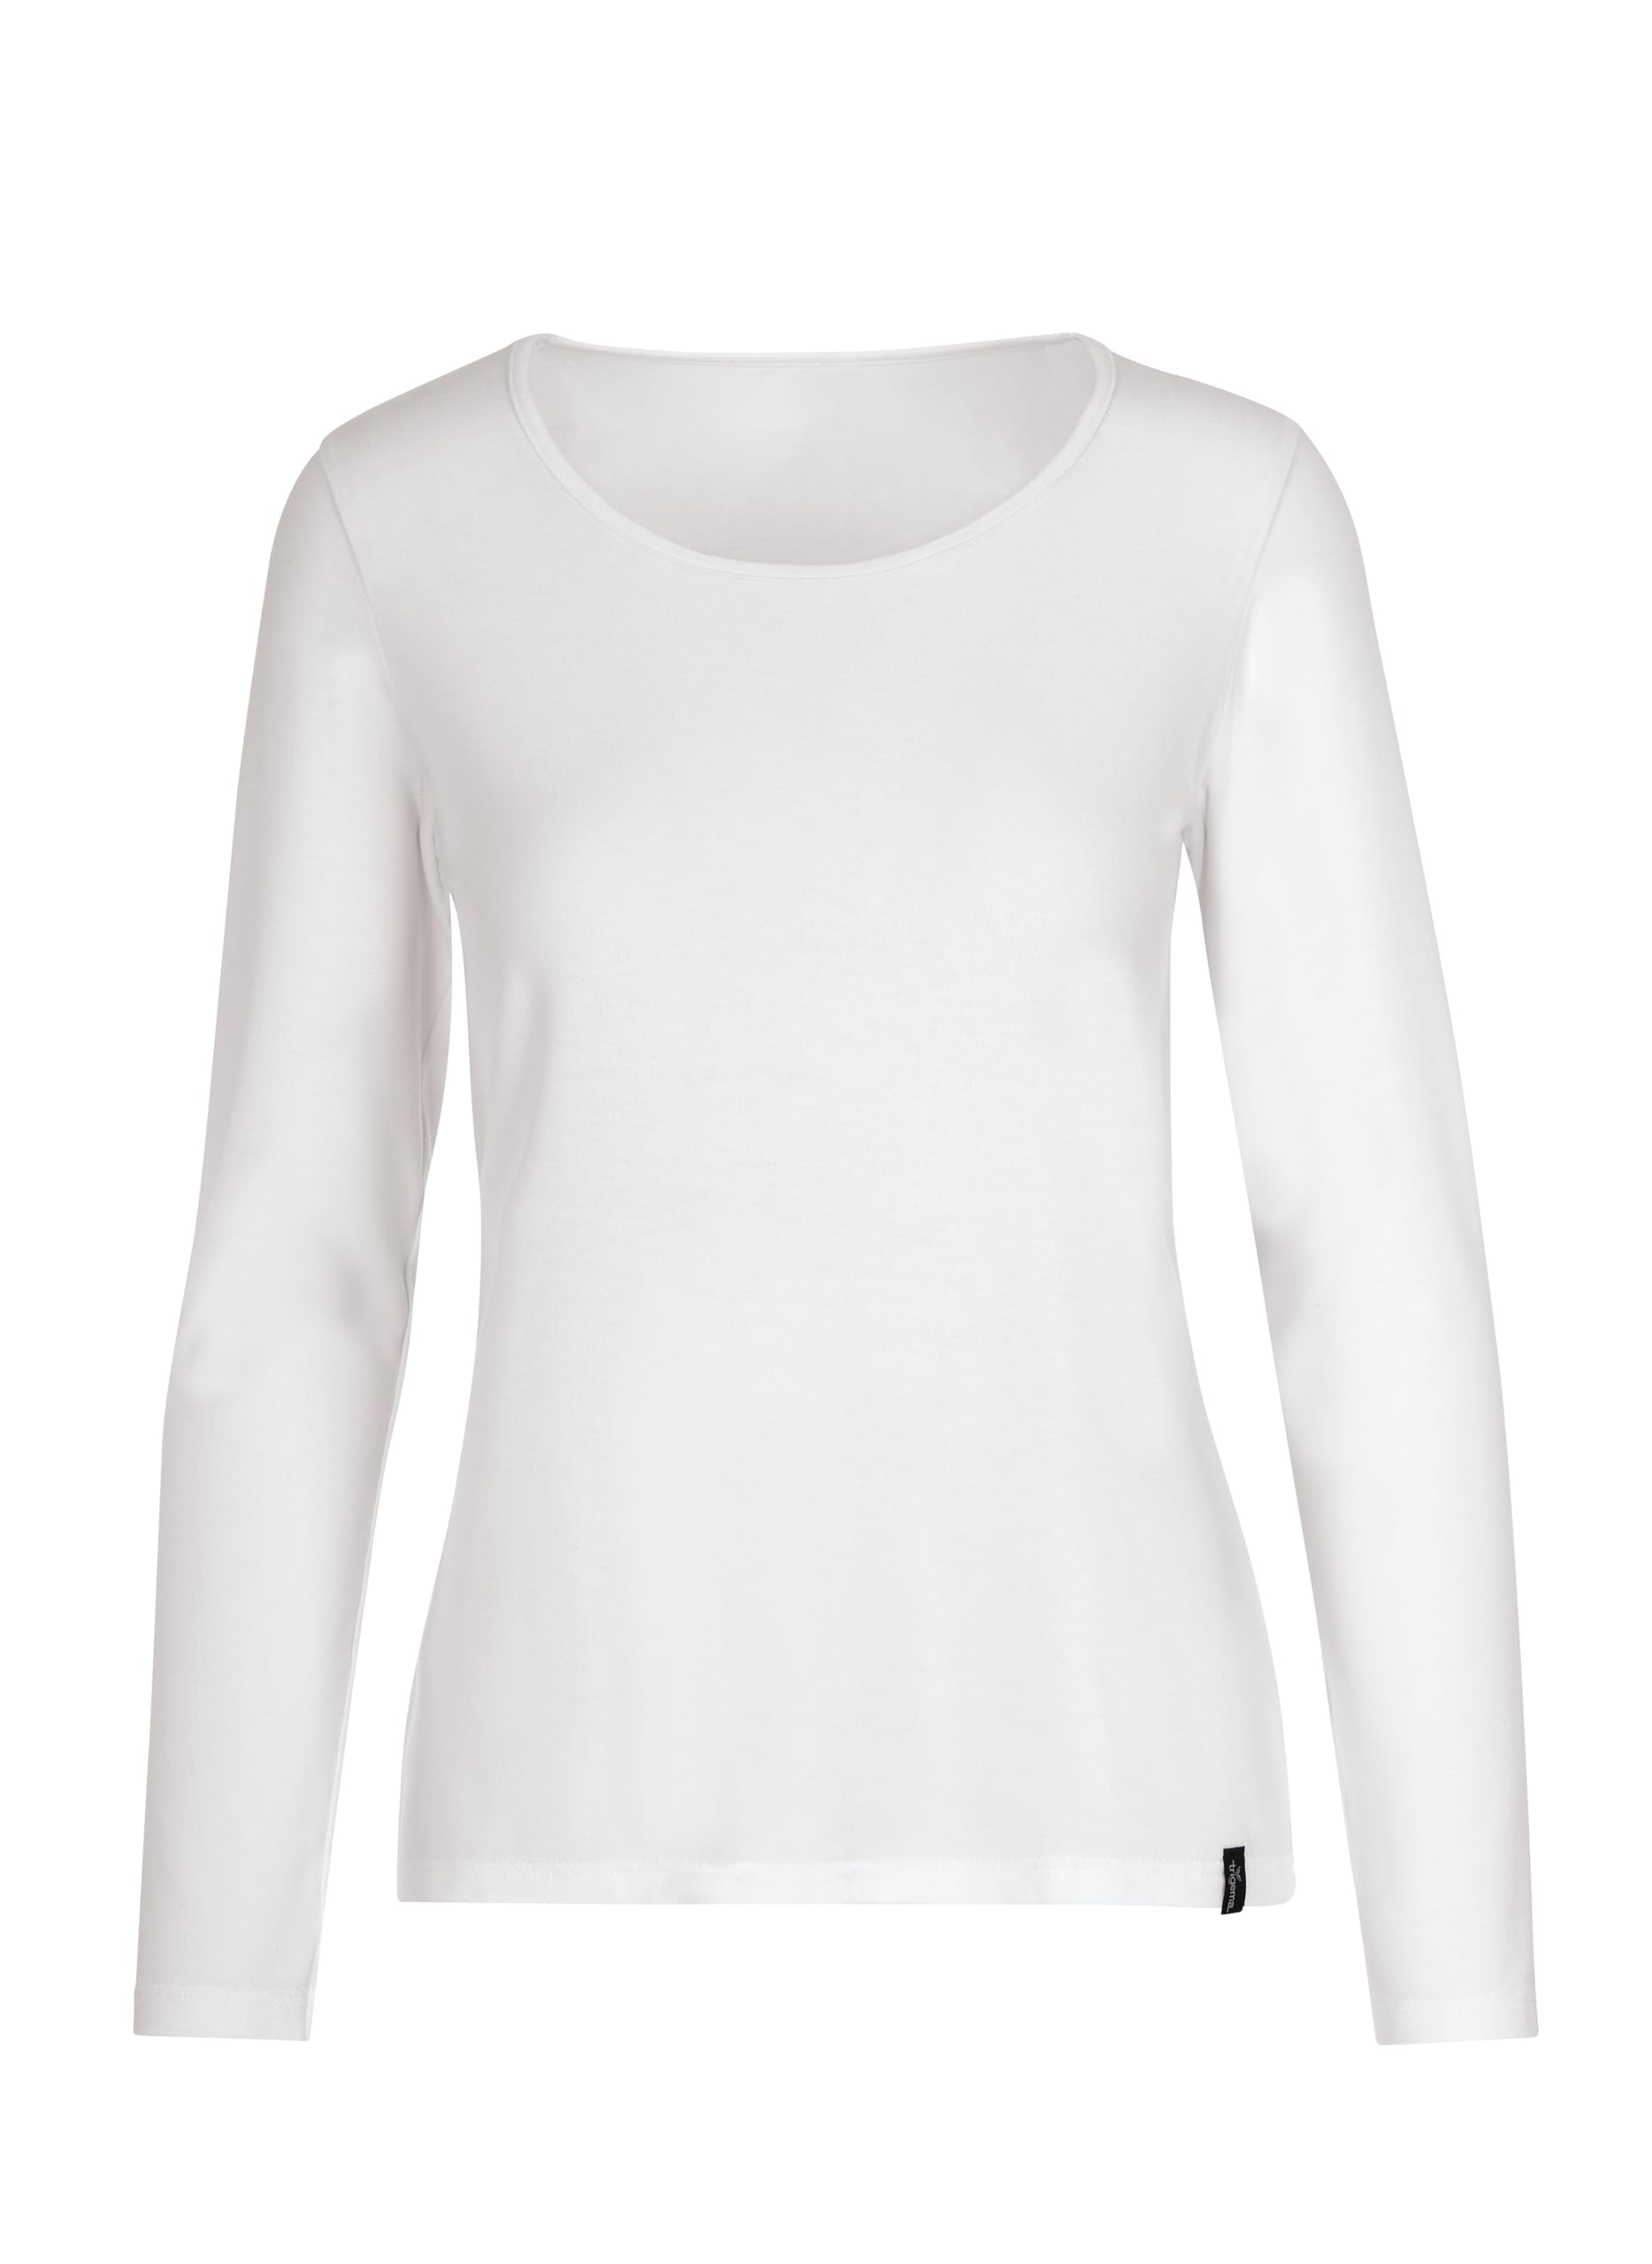 Trigema Damen 542501 T-Shirt, Weiß (weiß 001), 46 (Herstellergröße: XL)